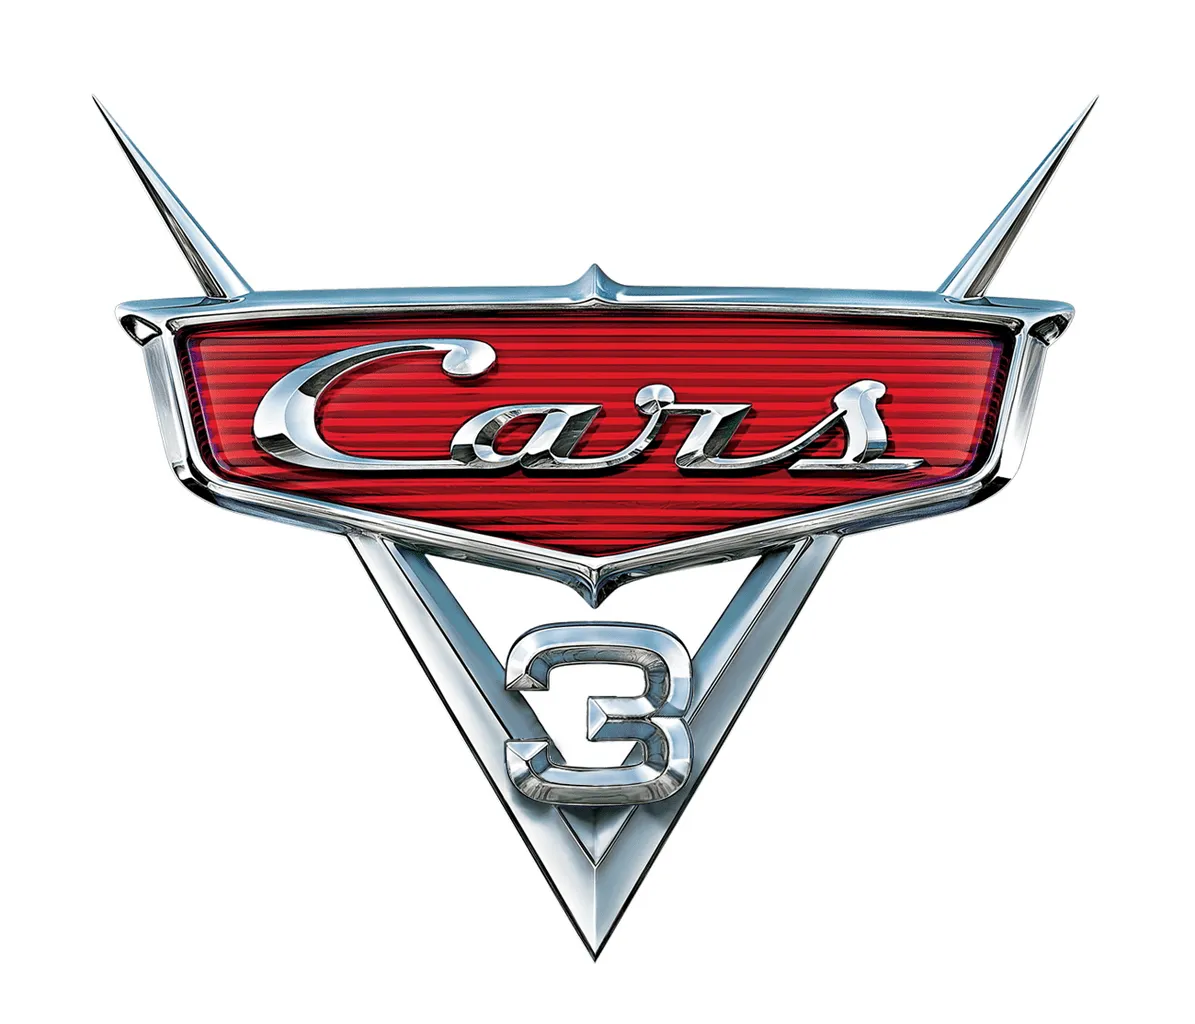 Image - GC cars 3 logo.png - DisneyWiki